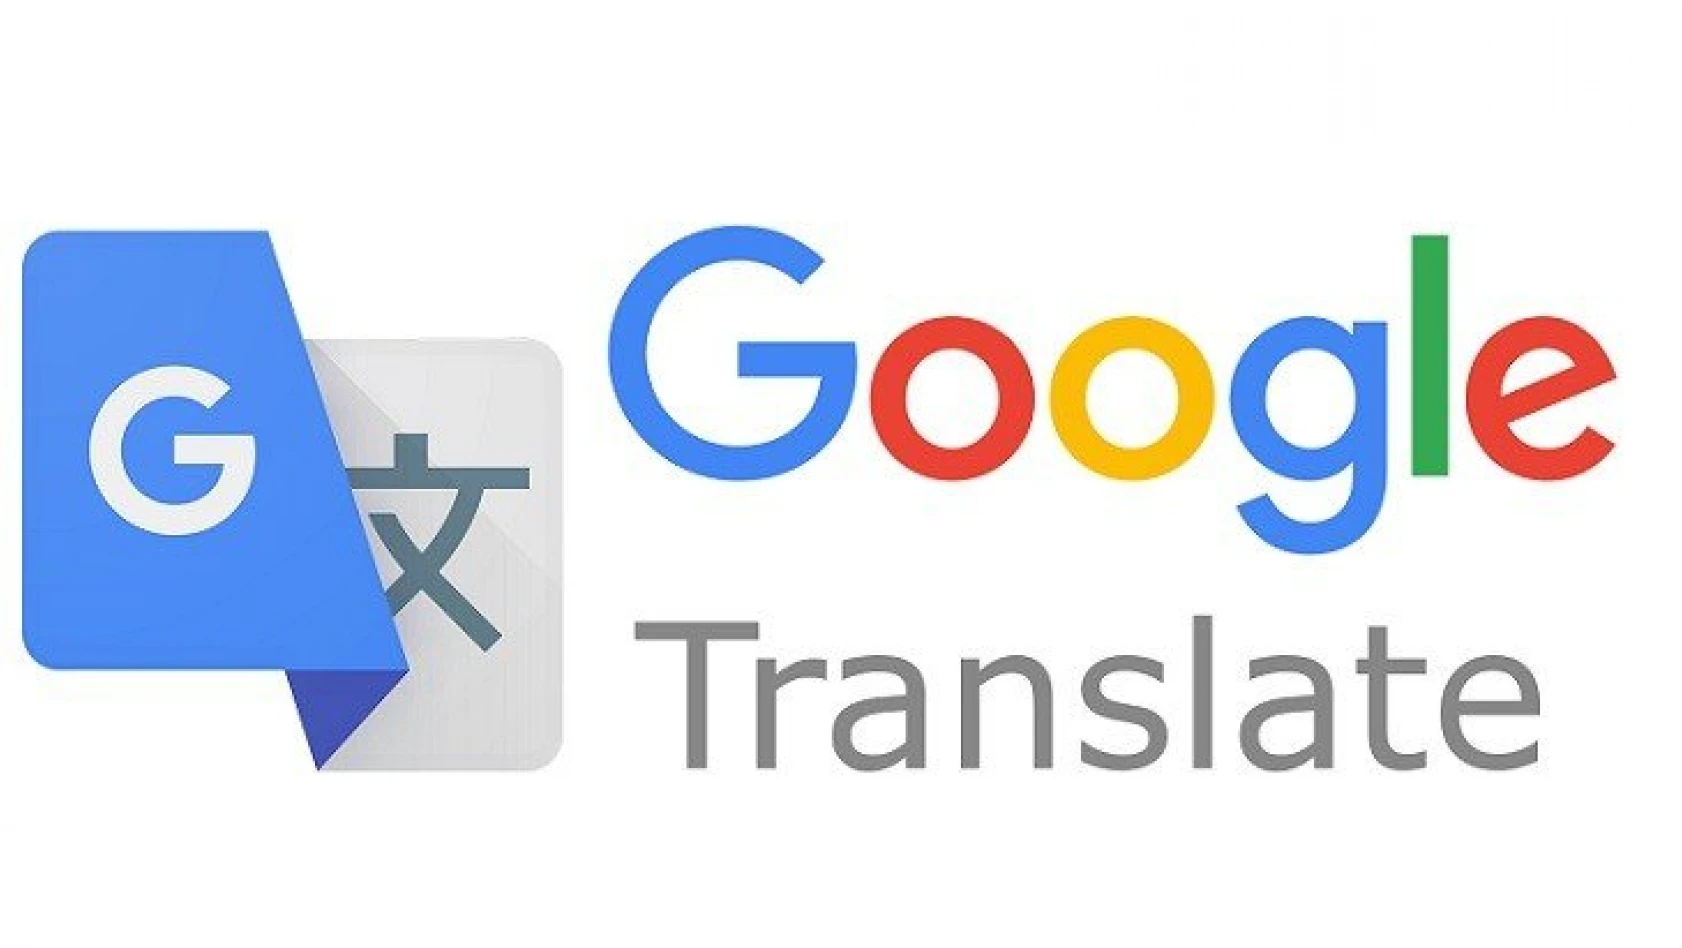 Google çeviri